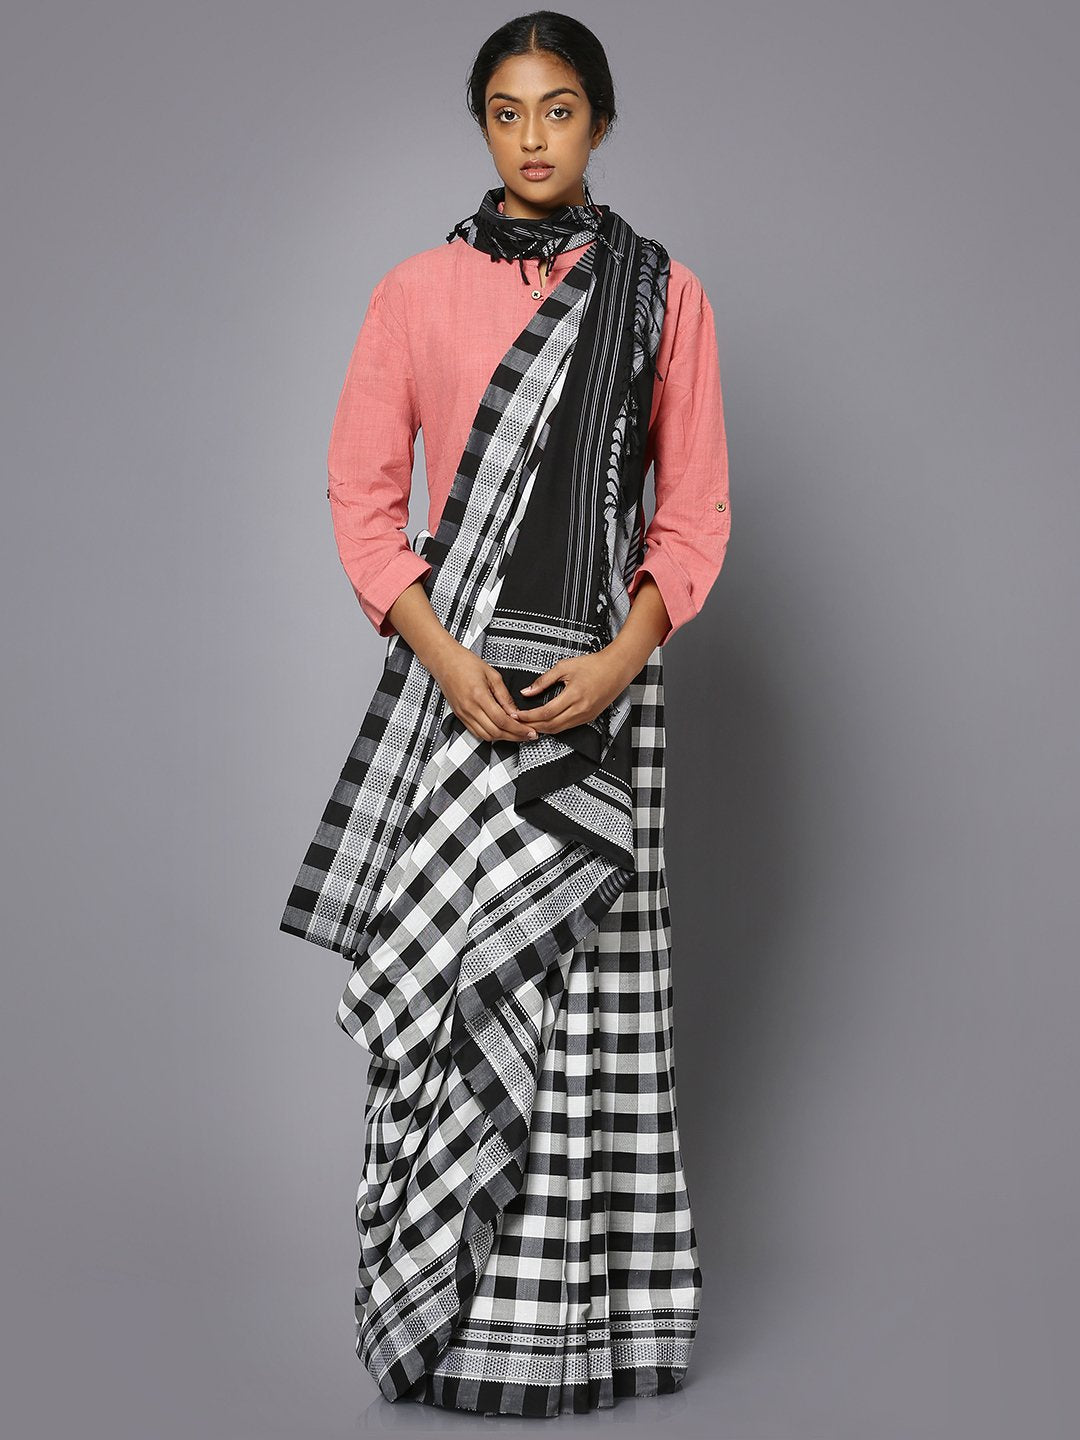 Black & white checkered ilkal cotton saree